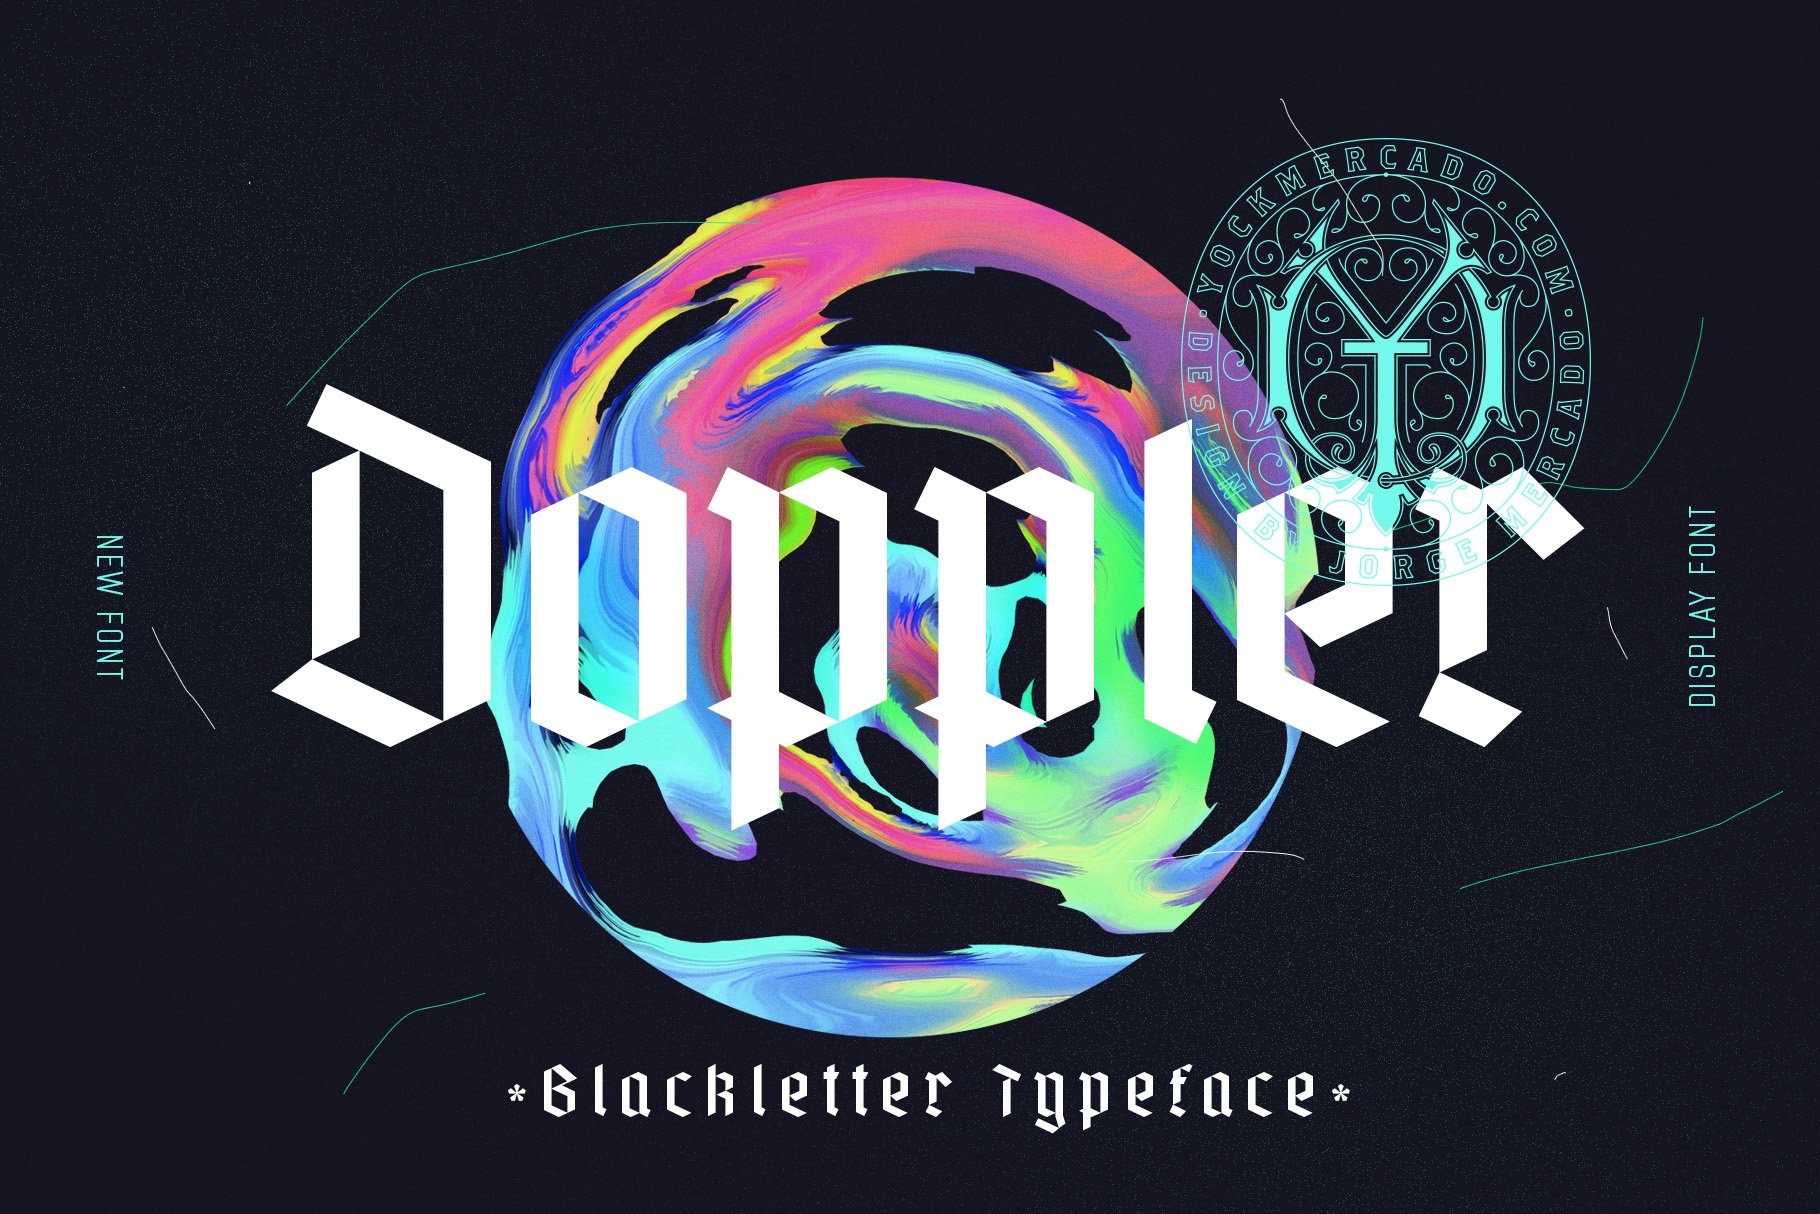 Doppler Modern Blackletter cover image.